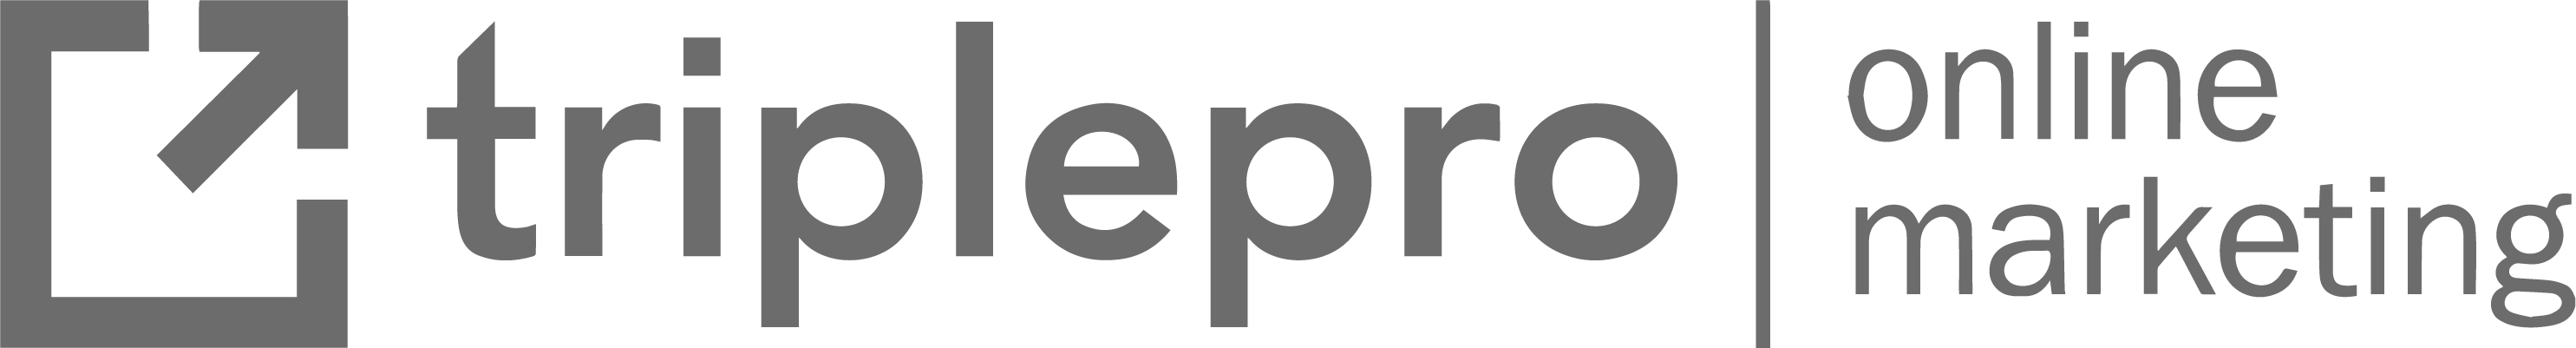 TriplePro logo